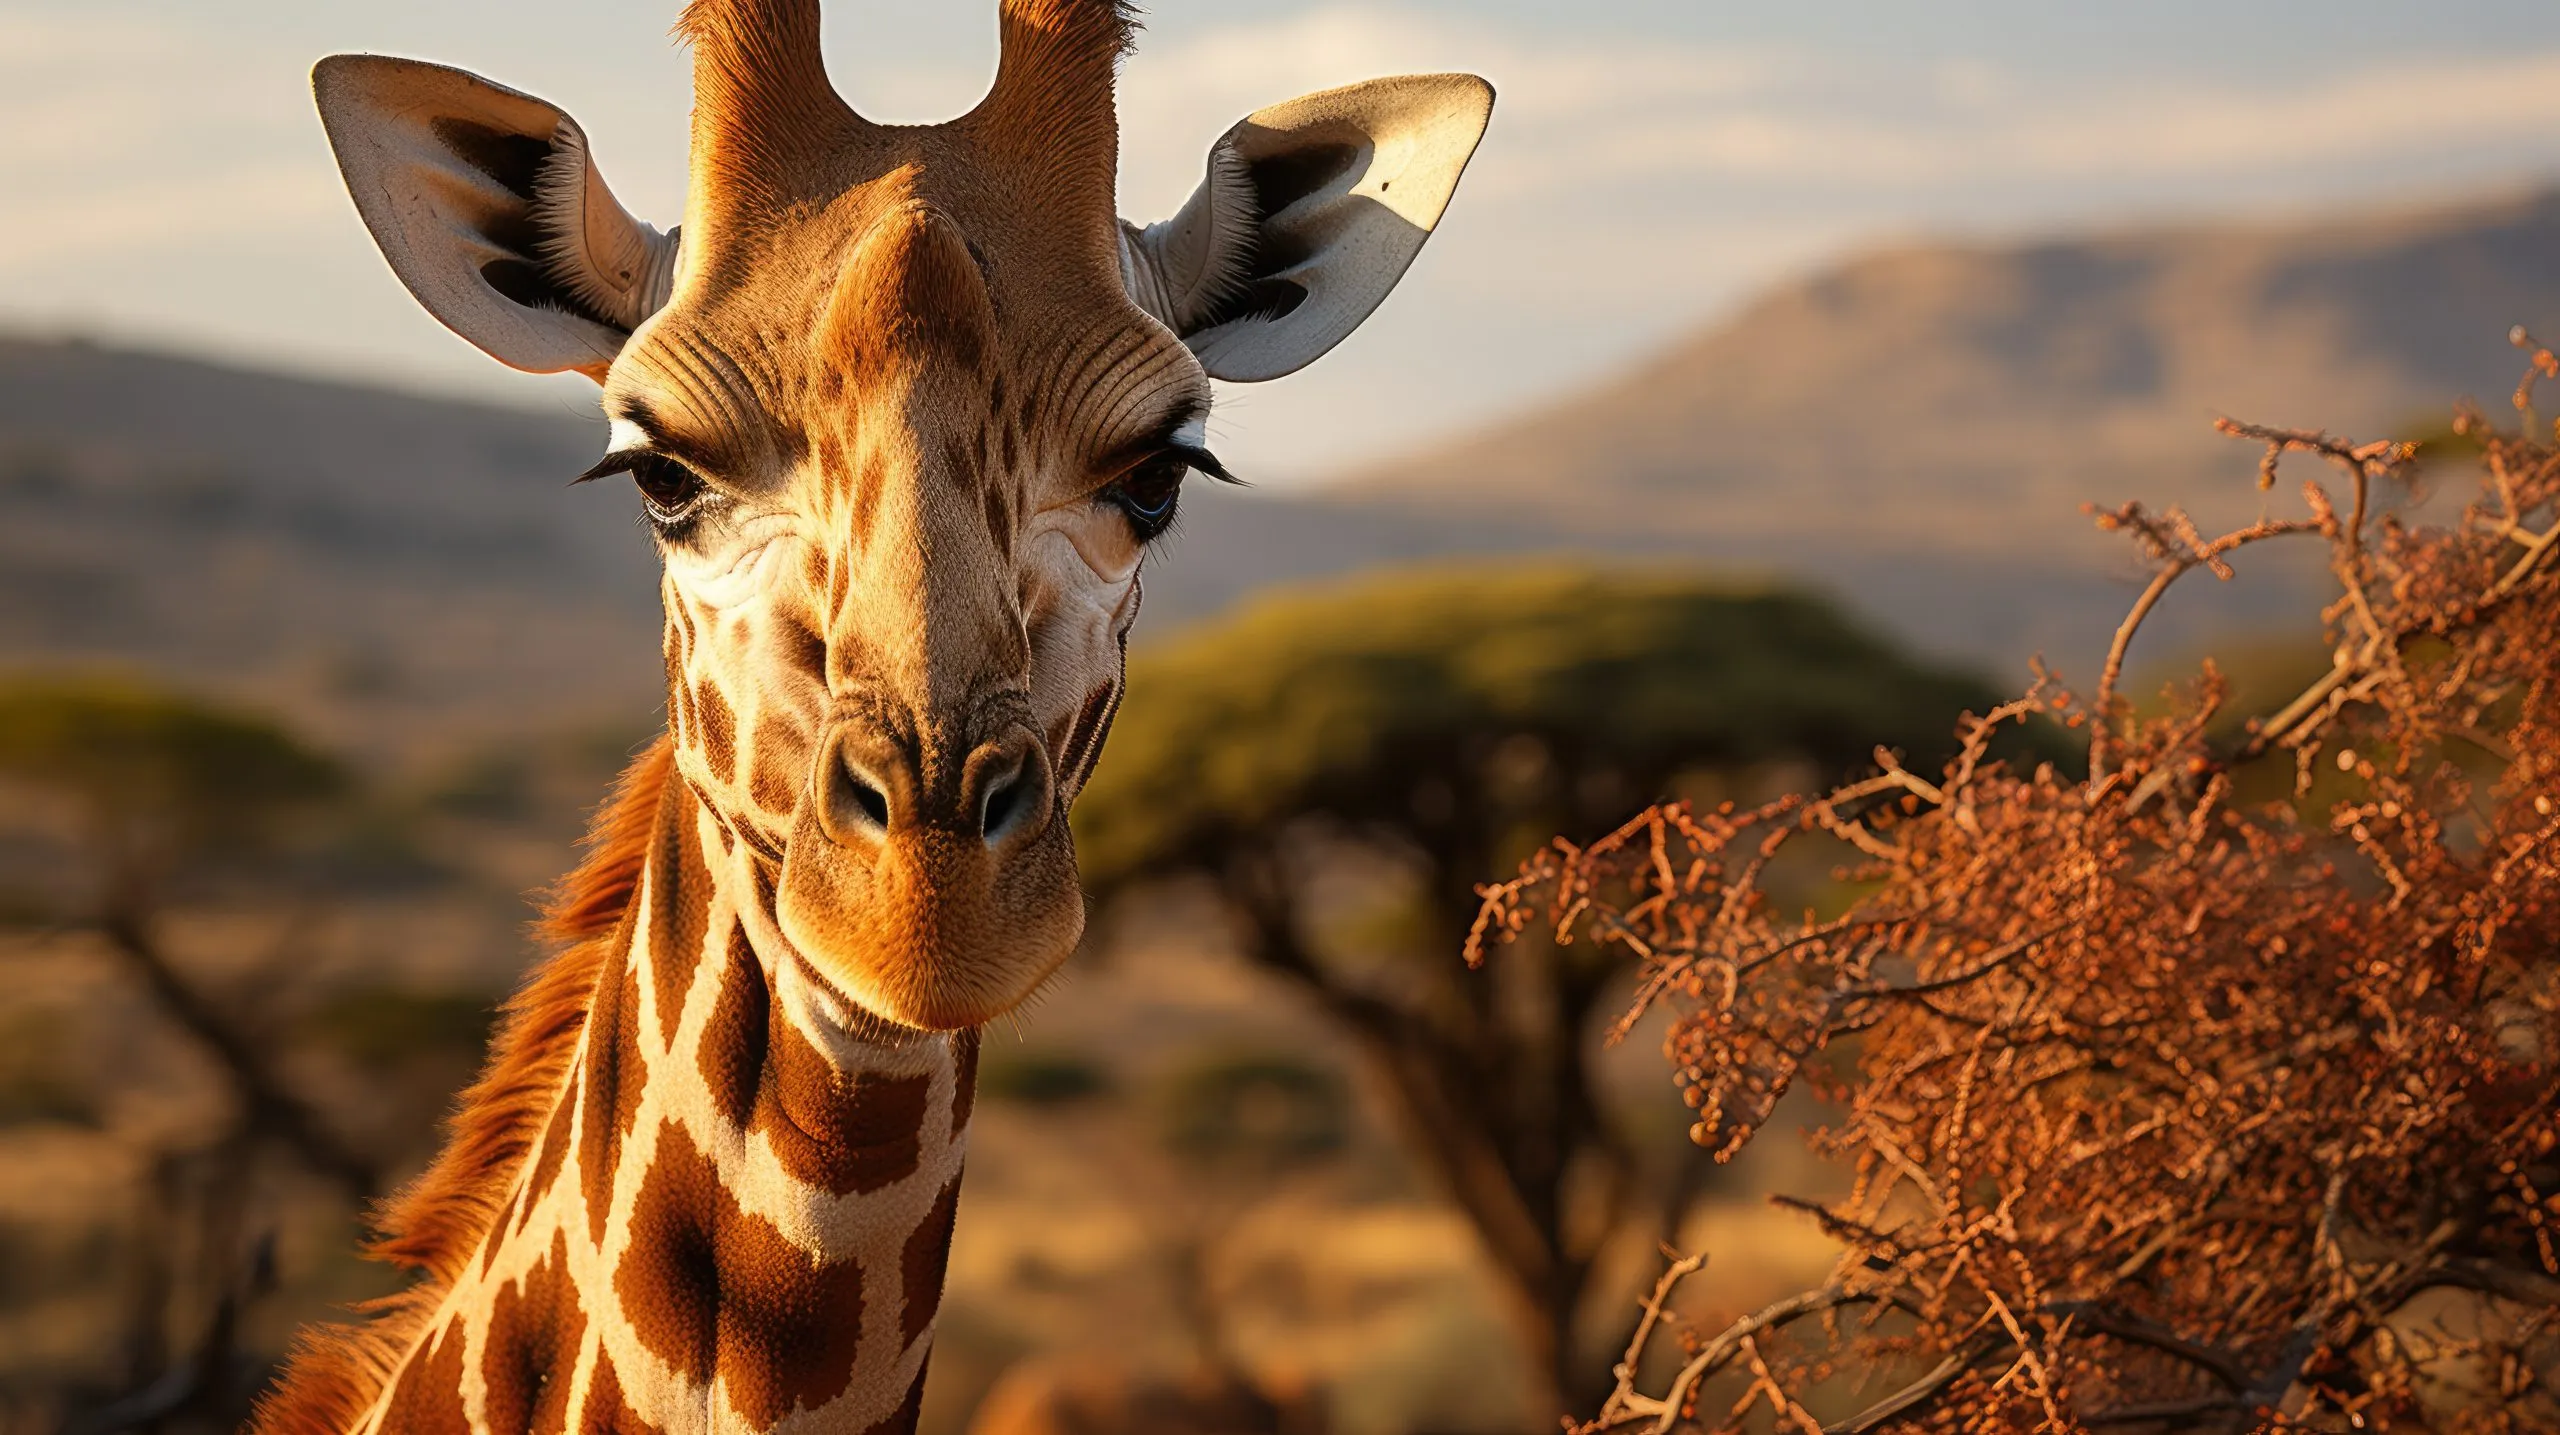 Verkkokirahvi (Giraffa camelopardalis reticulata) laiduntaa akaasiapuun latvojen oksilla Kenian Samburun kansallispuistossa. Sen pitkä kaula ja kuvioitu turkki erottuvat korkealla afrikkalaisessa maisemassa.